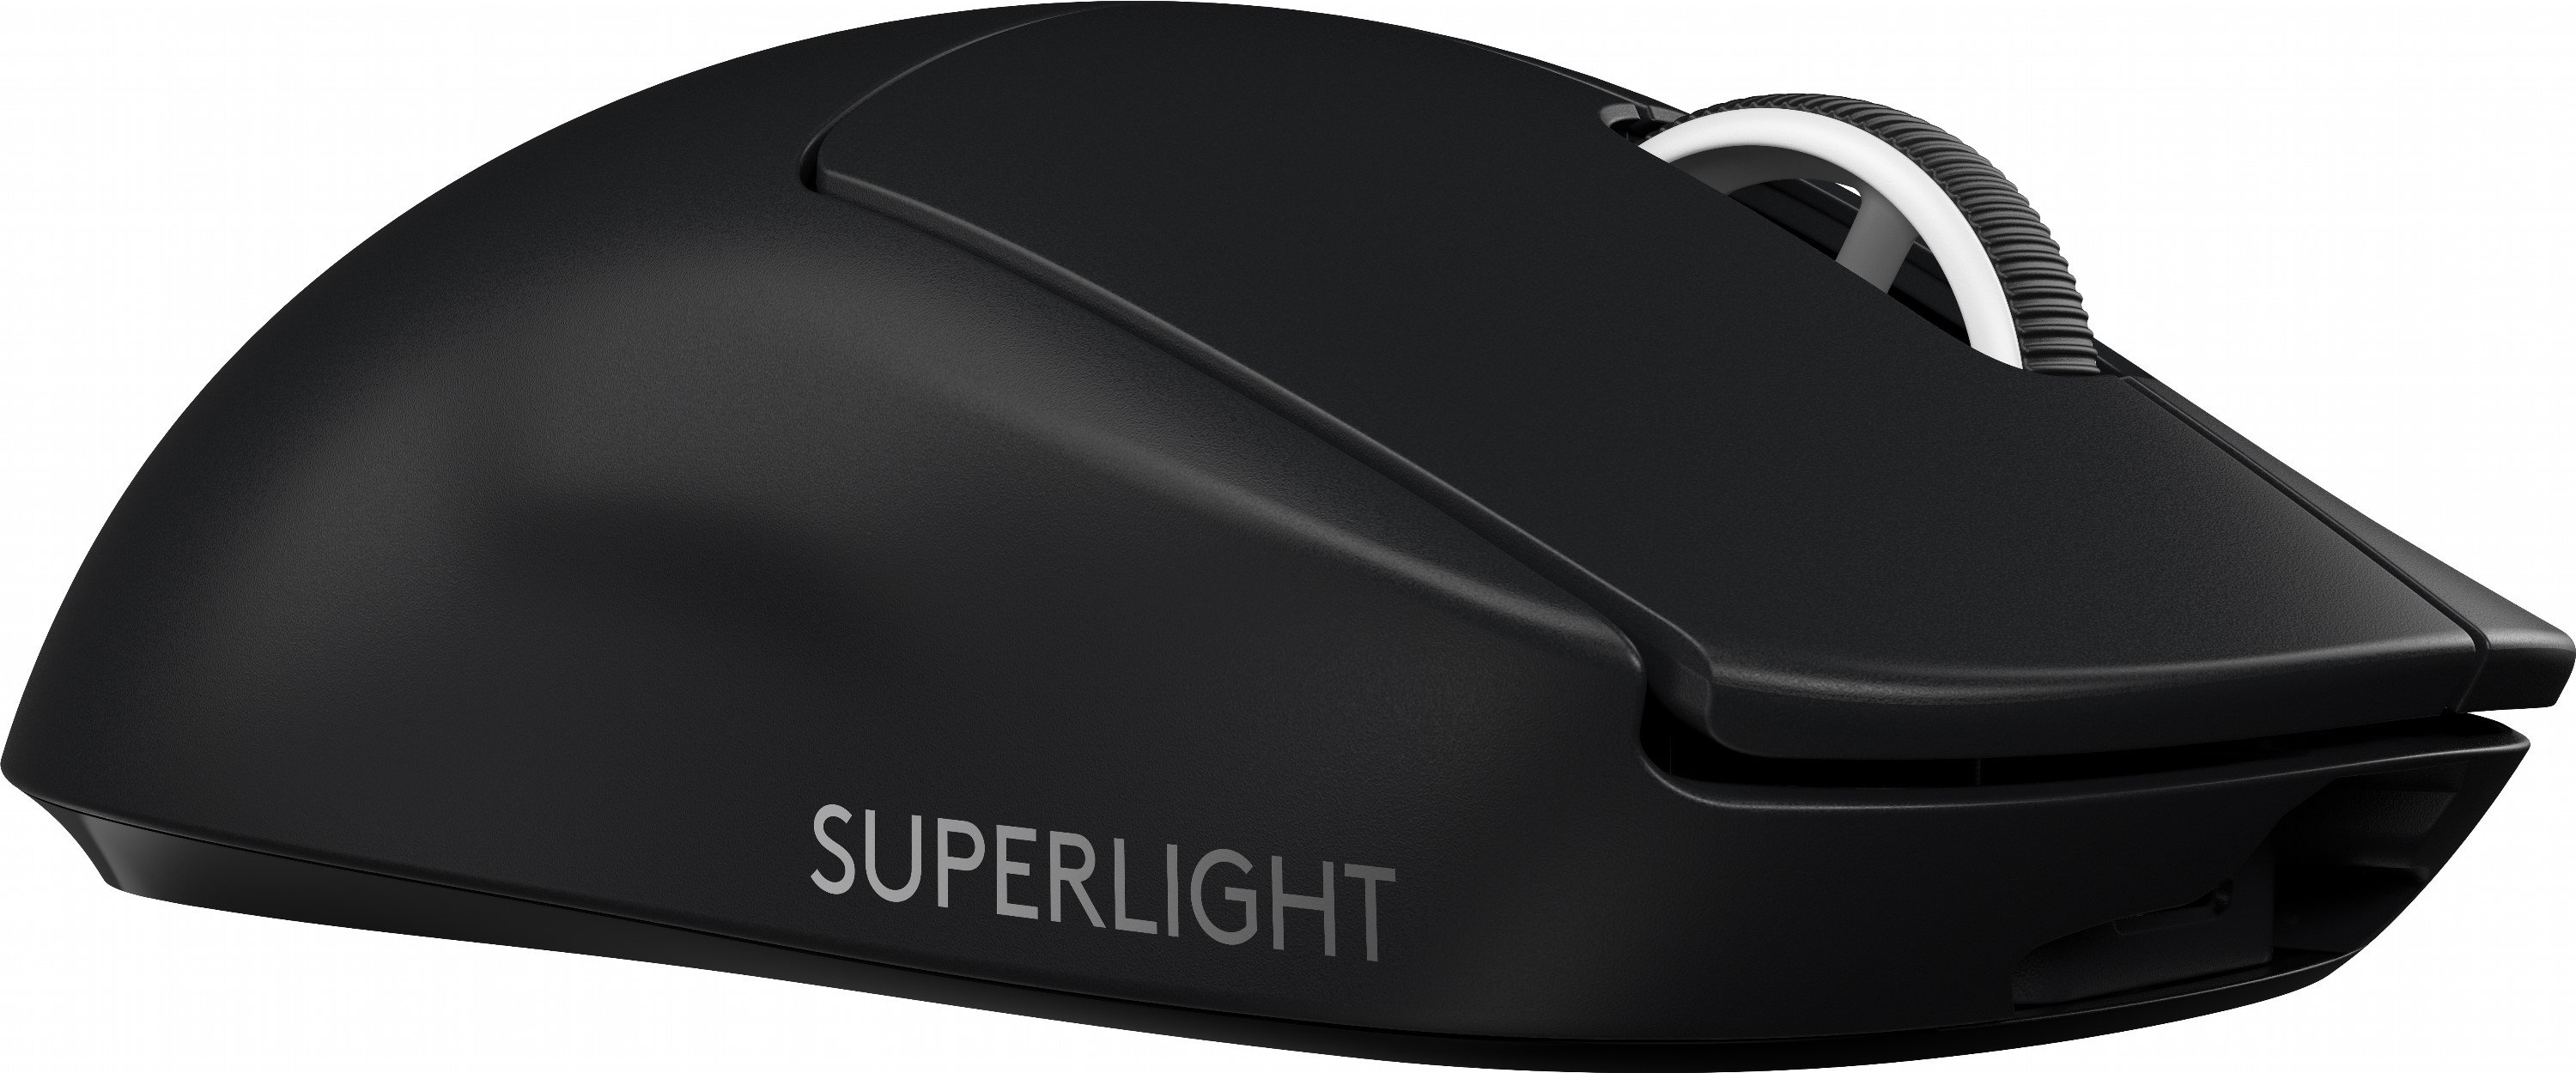 Беспроводная мышь logitech g pro x superlight. Logitech g Pro x Superlight. Logitech g Pro Wireless Superlight. Мышь Logitech 910-005880. Мышь Logitech g Pro x Superlight.